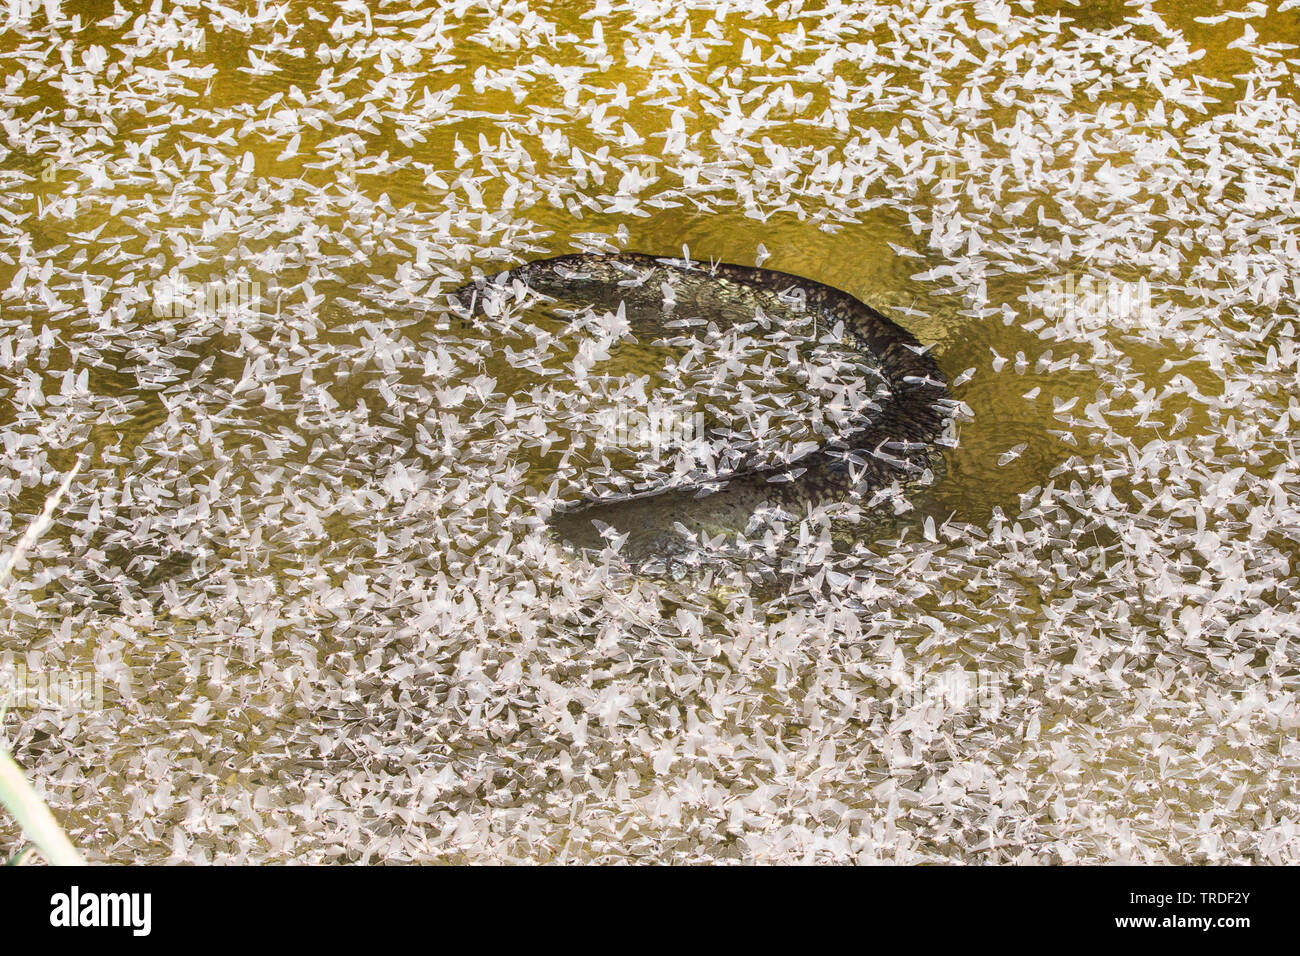 Pesce gatto europeo, wels, siluro, wels siluro (Silurus glanis), alimentando in molte effimere alla superficie dell'acqua, in Germania, in Baviera Foto Stock